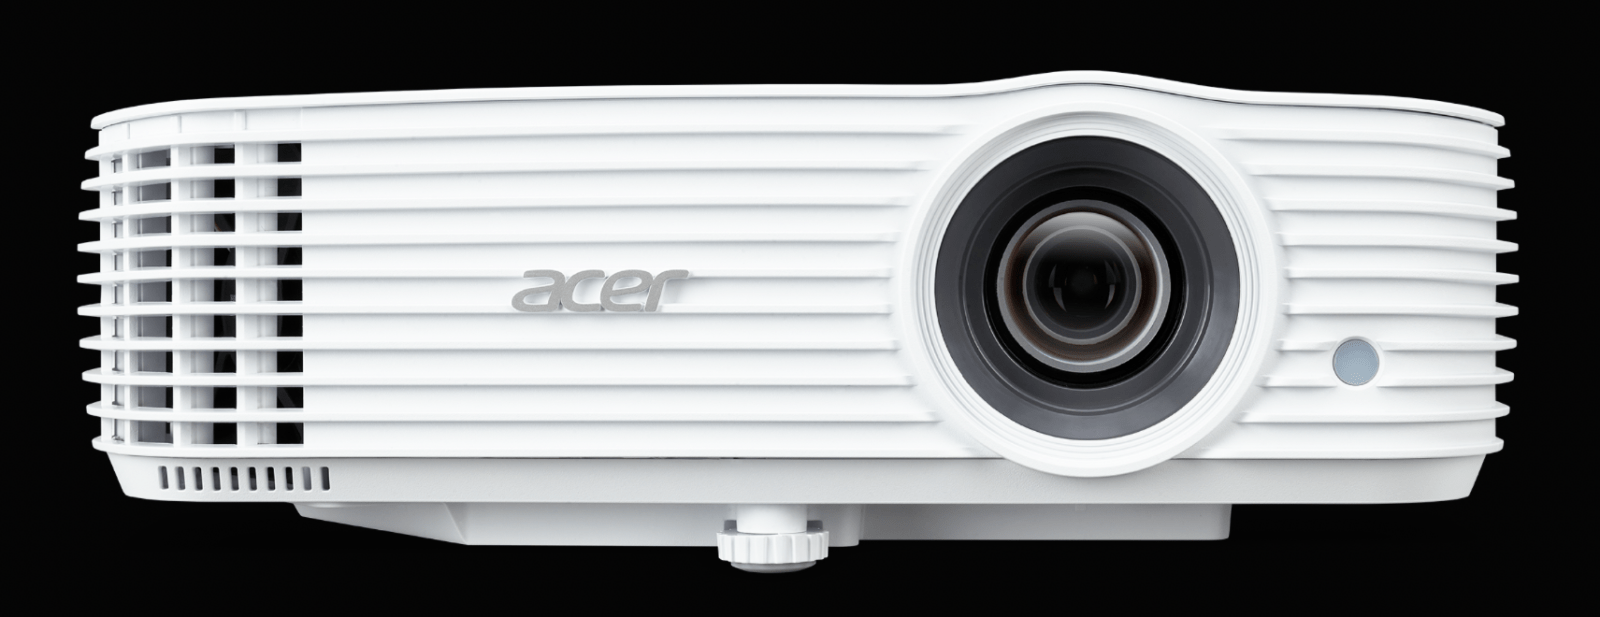 Acer вывела на рынок новый проектор X1629HP (image 39)